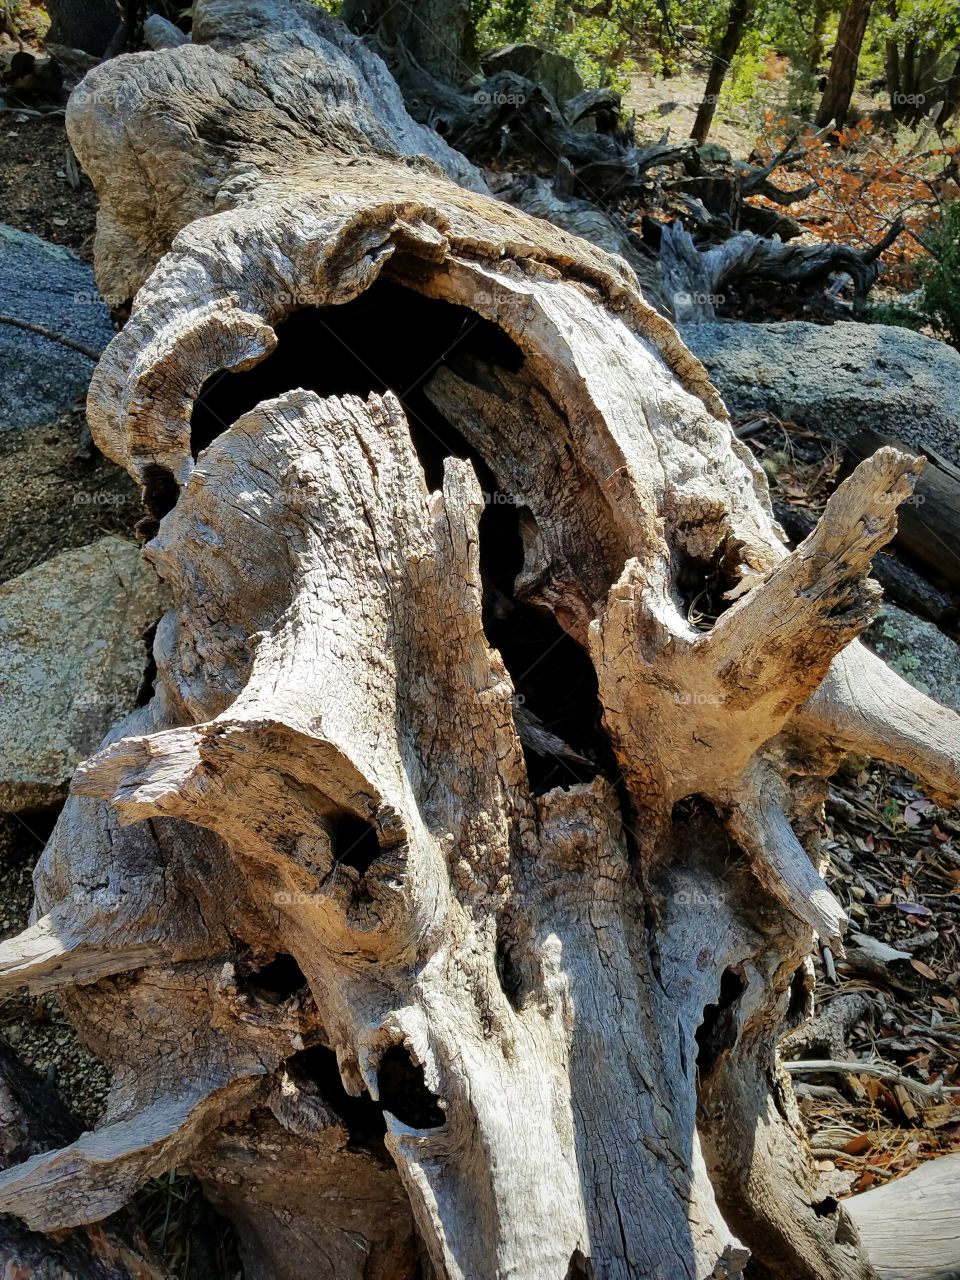 Fallen tree trunk